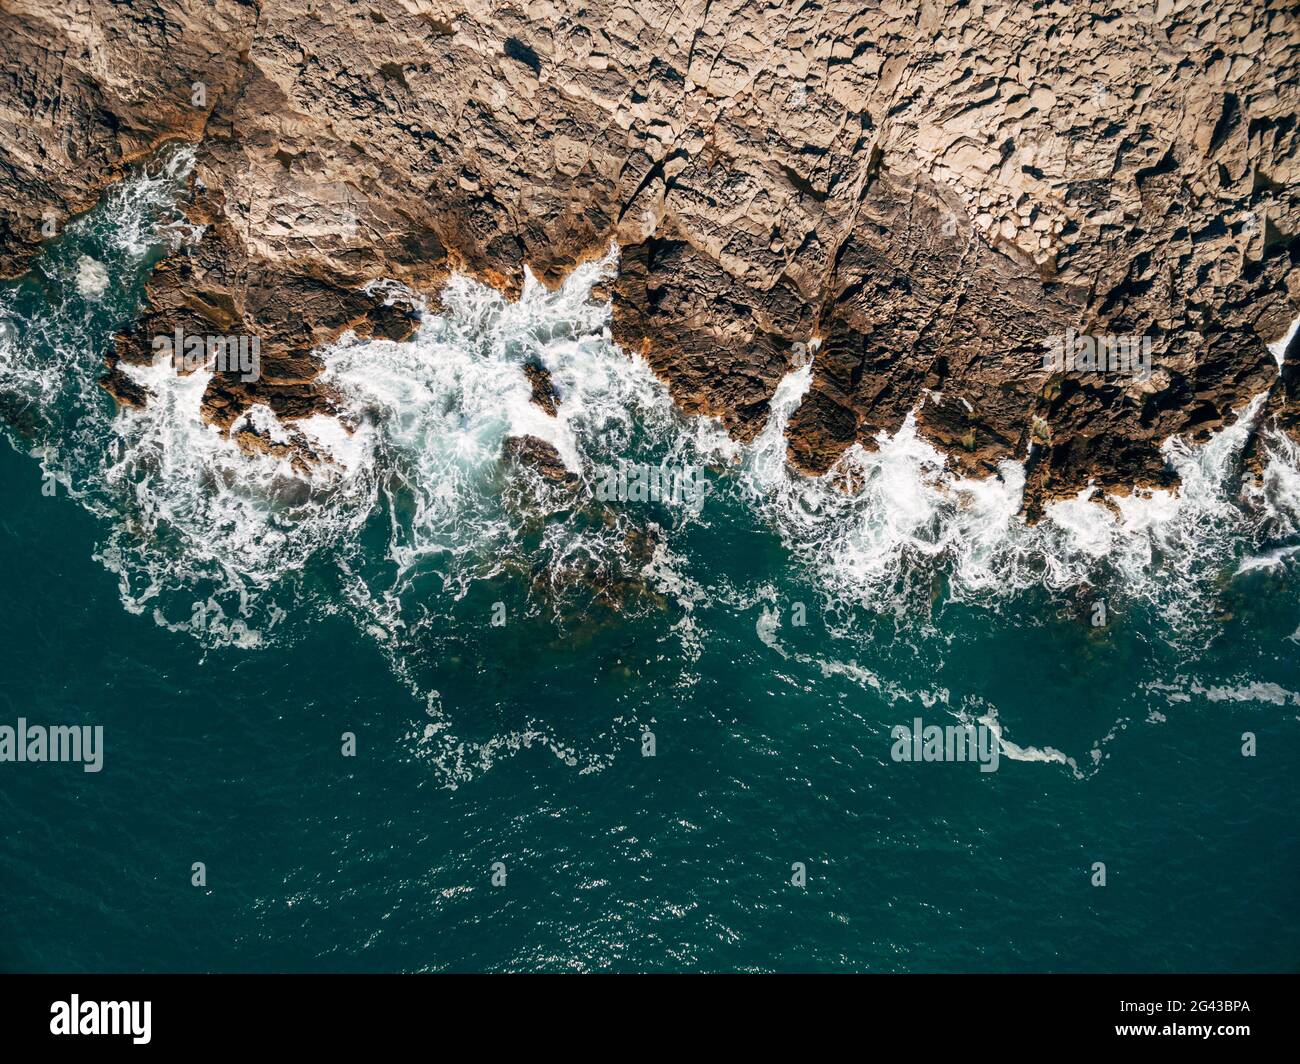 Drone aérien, vue de dessus des belles vagues de l'océan, s'écrasant sur la côte d'une île rocheuse. Banque D'Images